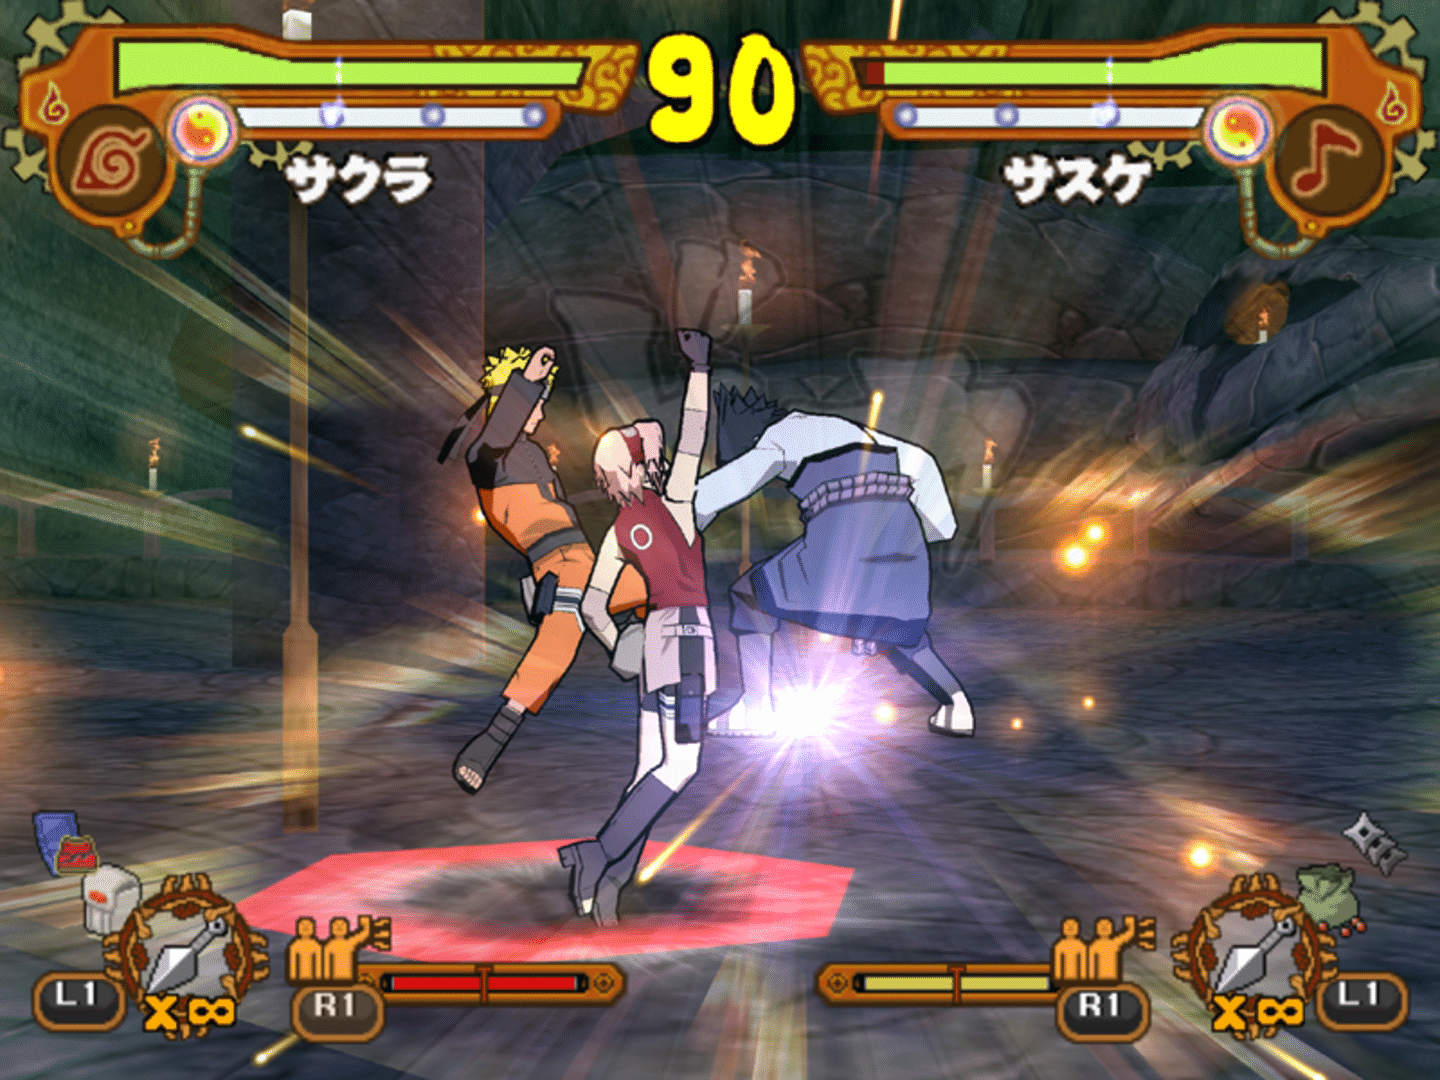 Naruto Shippuden Ultimate Ninja 5 PS2 - LISTA de TODOS OS